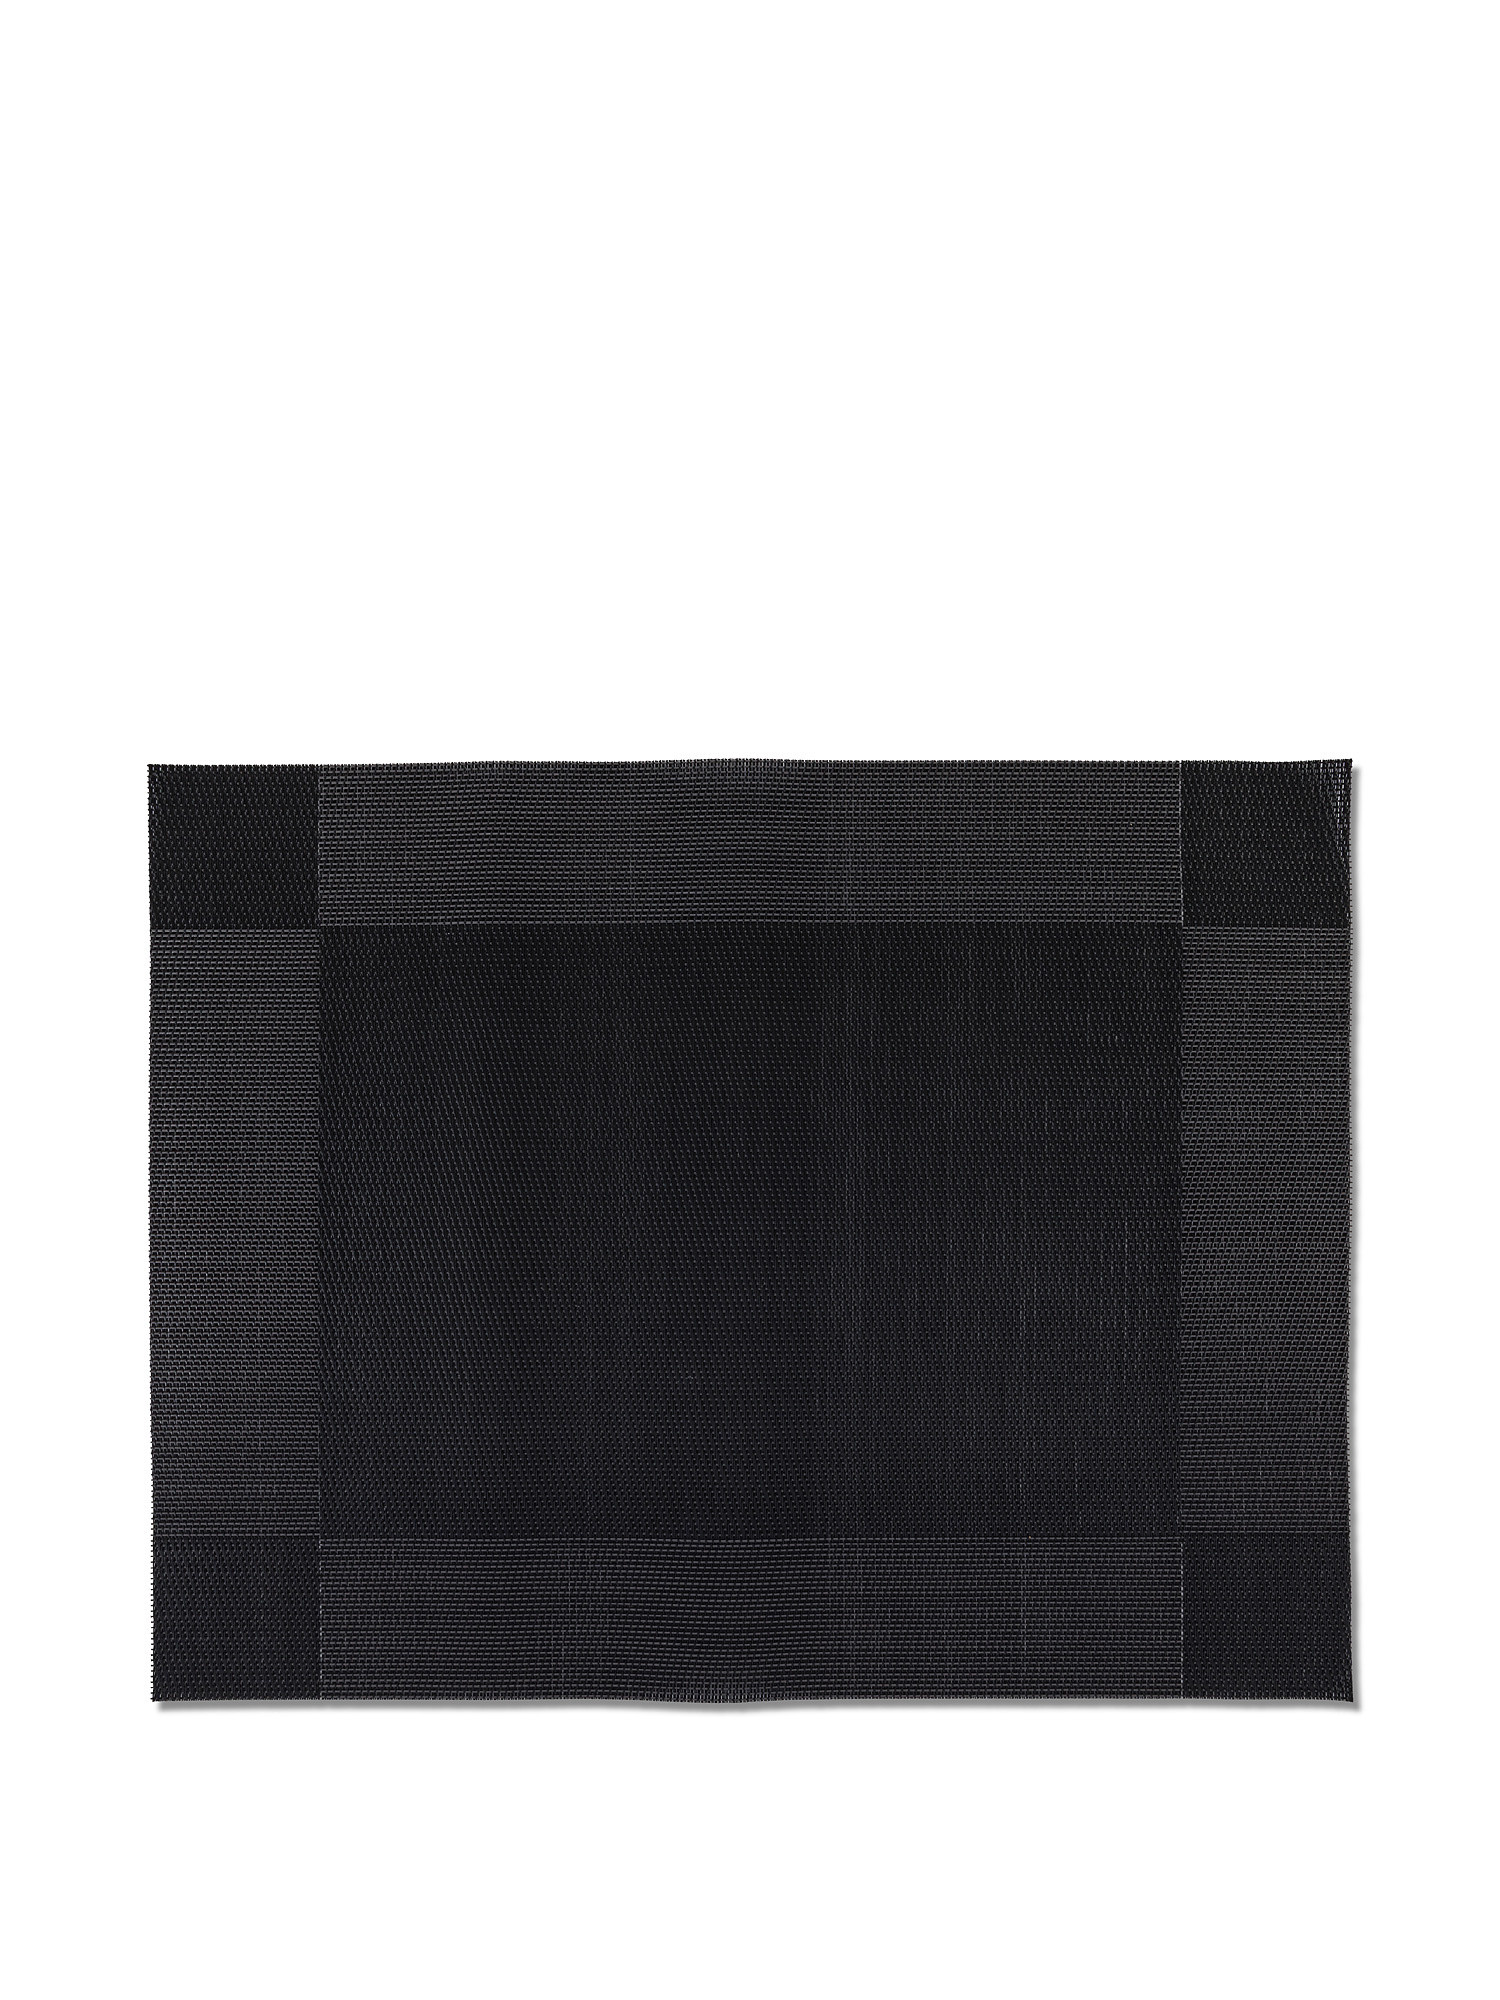 Каркас подставки для столовых приборов из ПВХ Coincasa, черный подставка для столовых приборов terka единый размер бежевый